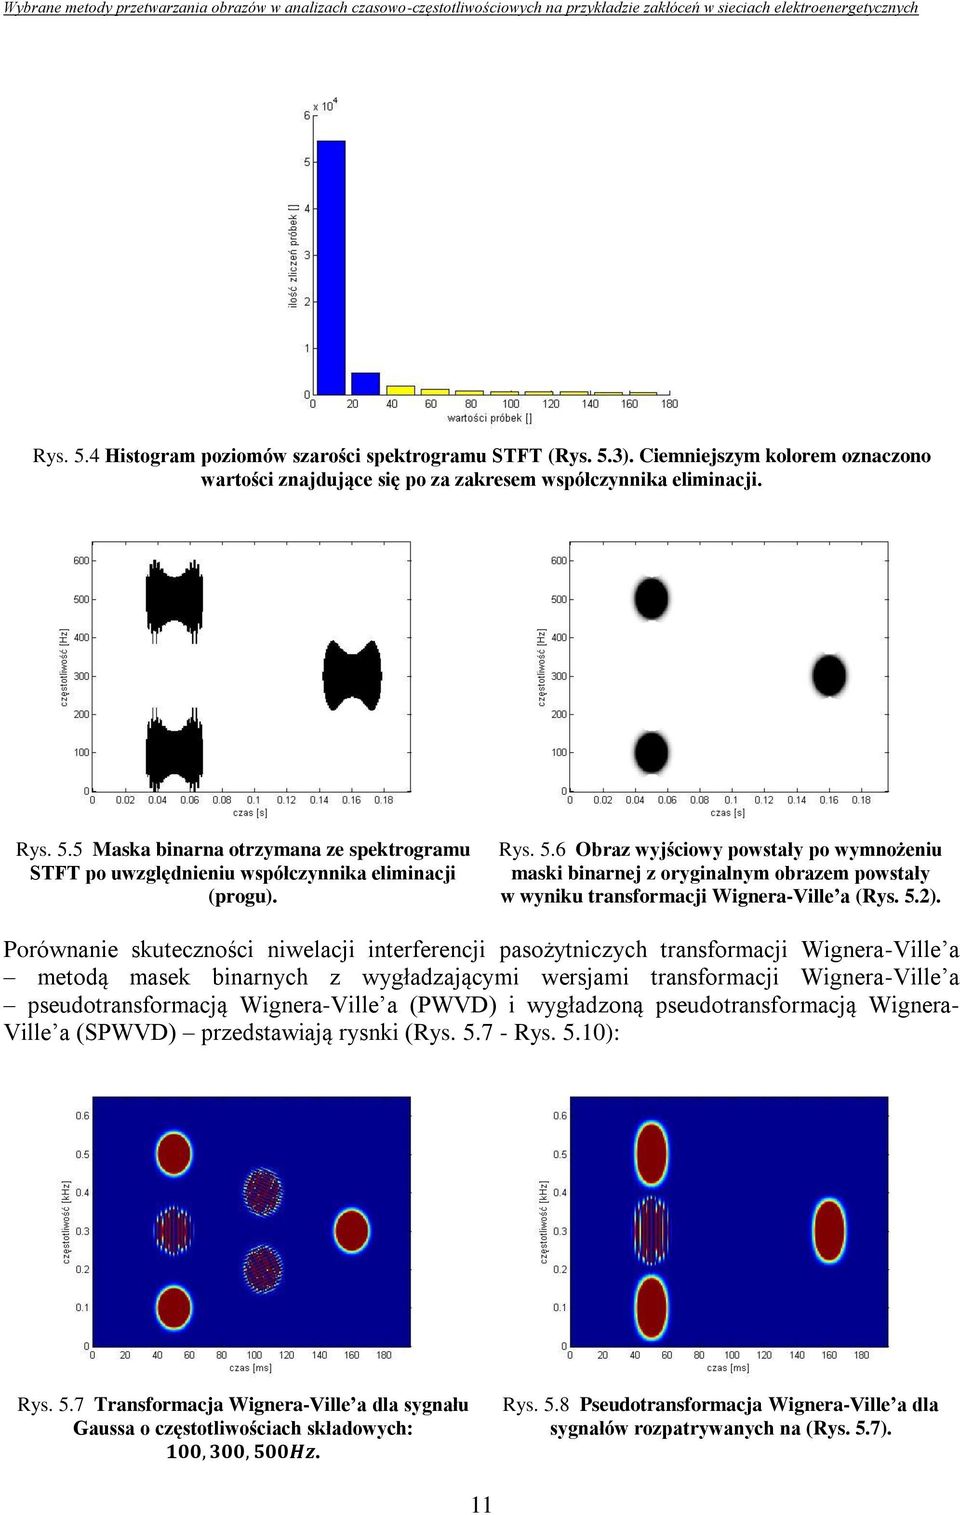 Porównanie skuteczności niwelacji interferencji pasożytniczych transformacji Wignera-Ville a metodą masek binarnych z wygładzającymi wersjami transformacji Wignera-Ville a pseudotransformacją